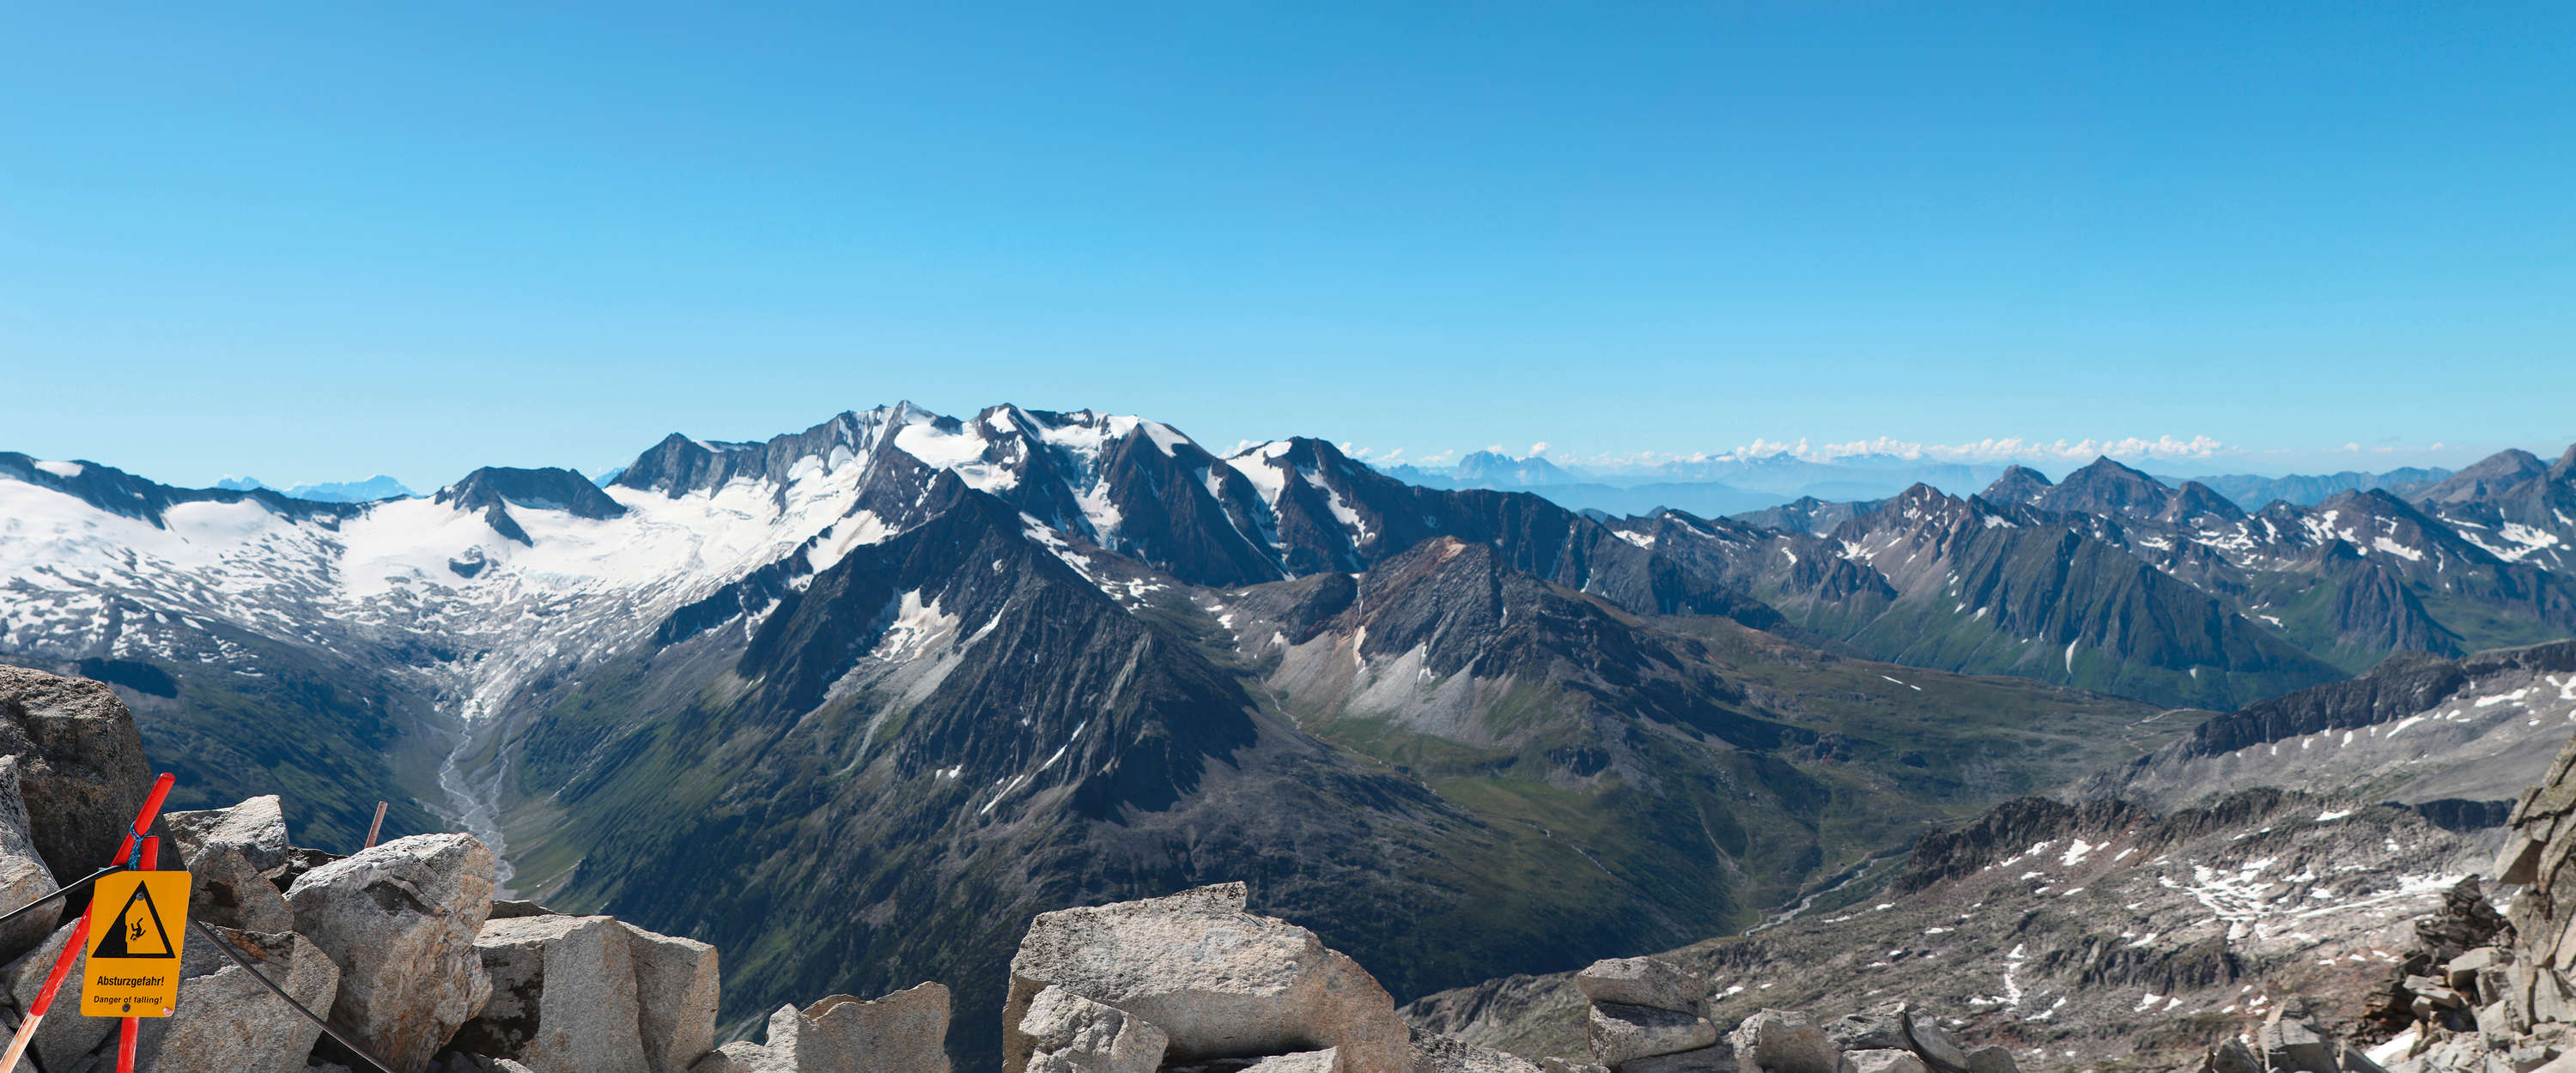             Fotomurali con ampia veduta del panorama alpino
        